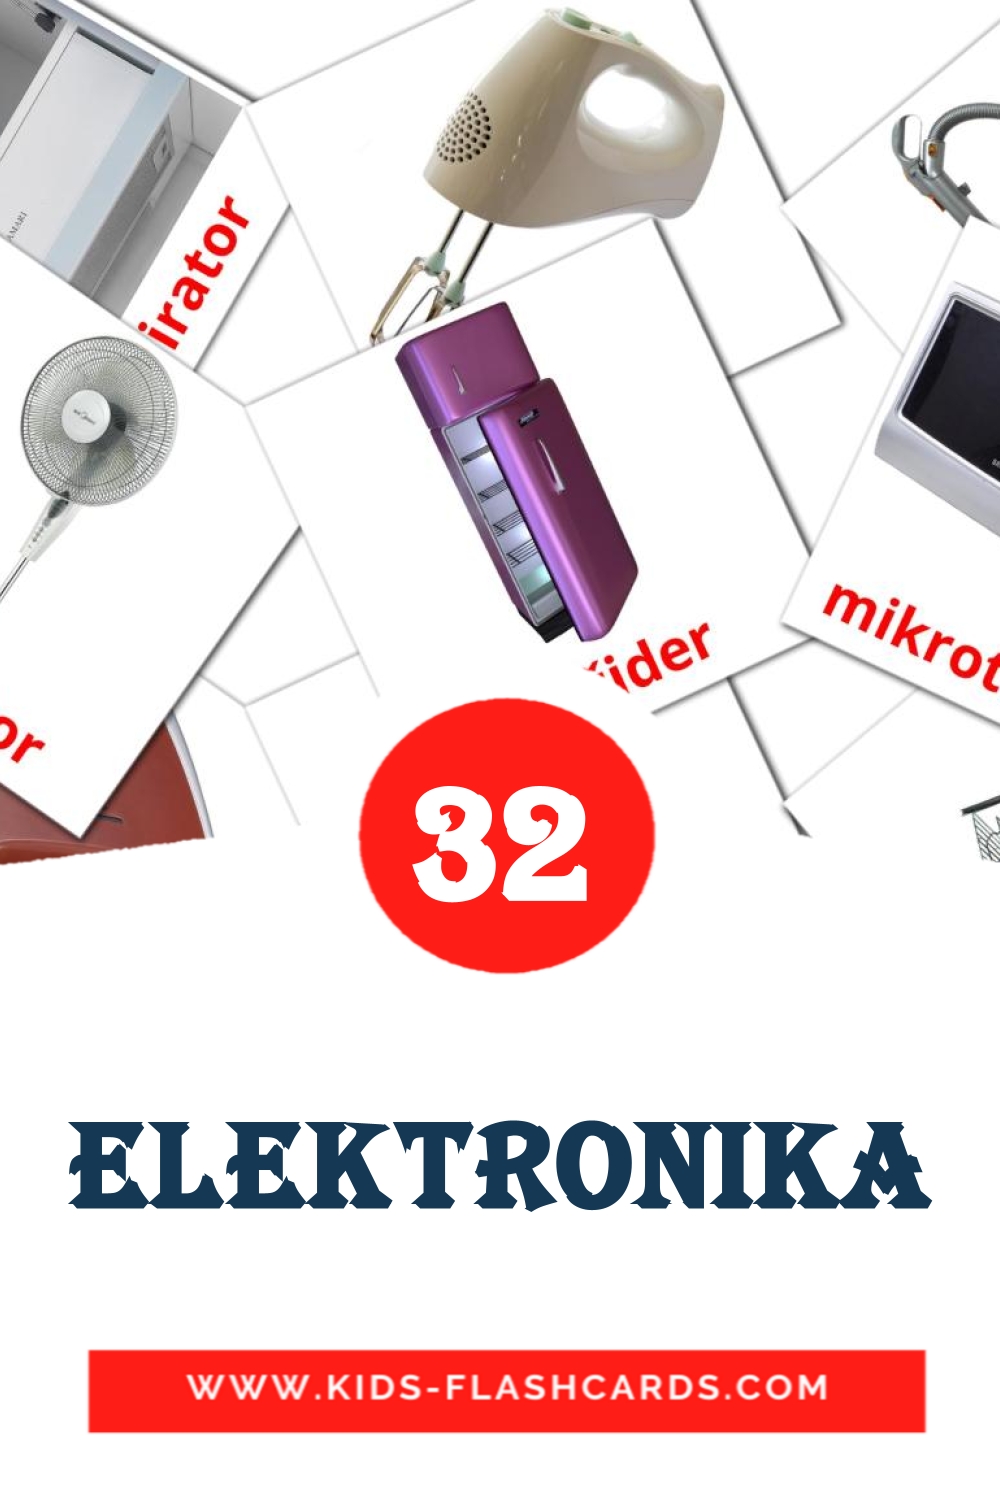 32 Elektronika fotokaarten voor kleuters in het servisch